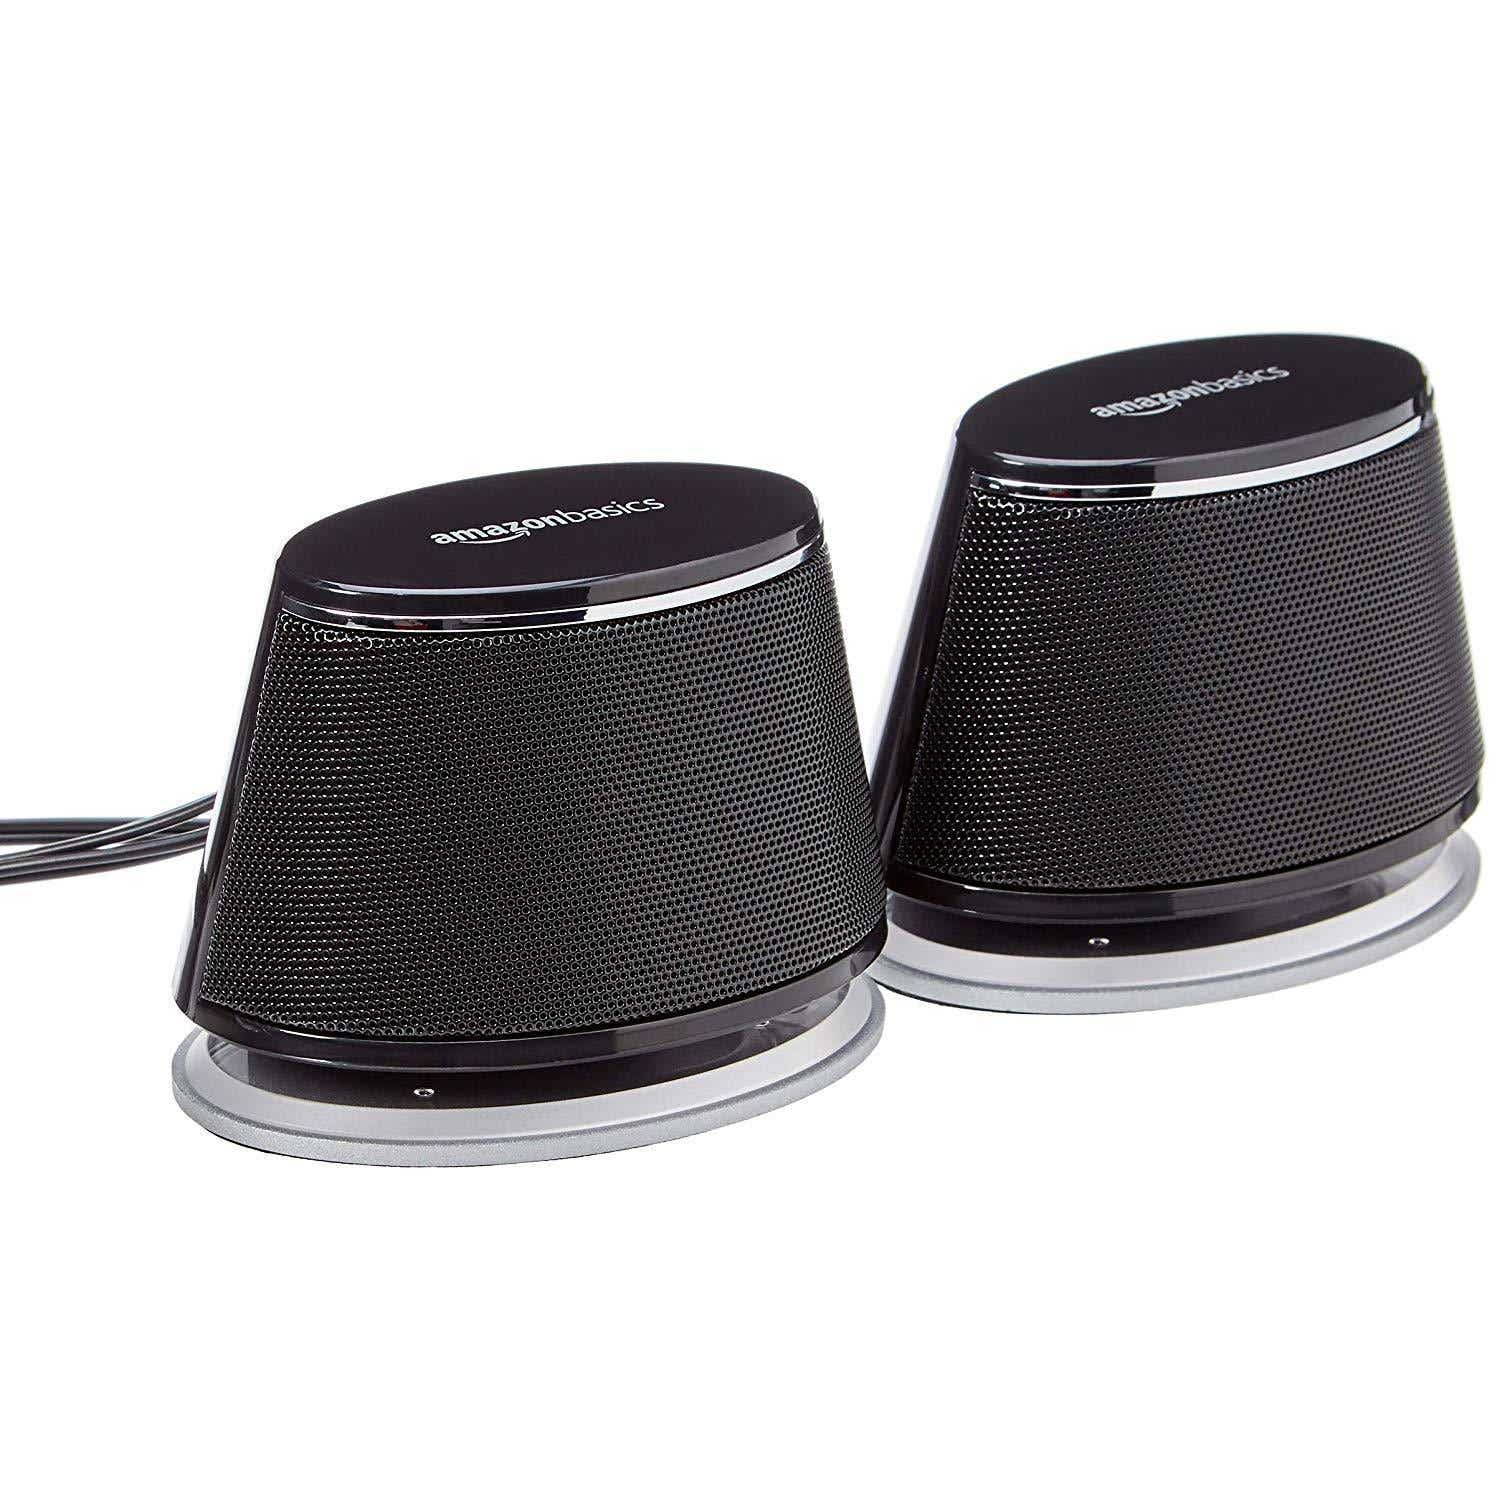 سماعات الكمبيوتر AmazonBasics التي تعمل بمنفذ USB مع الصوت الديناميكي - أفضل خيار رخيص الثمن